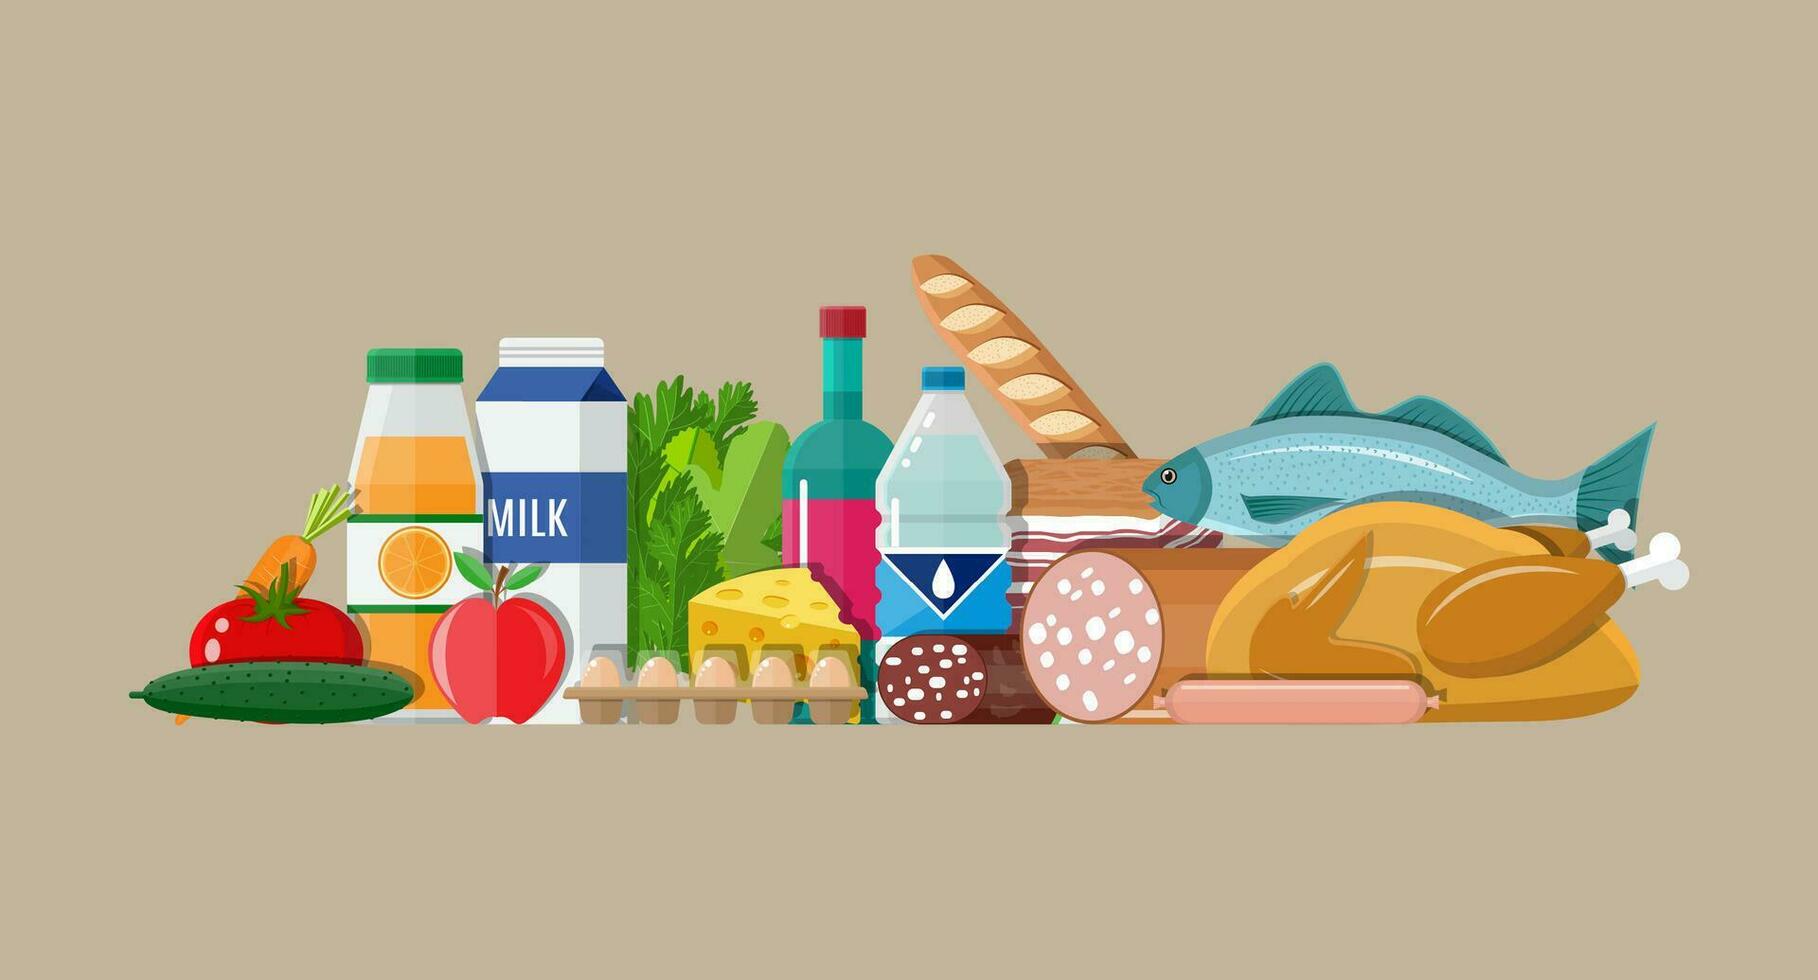 kruidenier set. inclusief vlees vis, salade, brood, melk producten. vector illustratie in vlak stijl